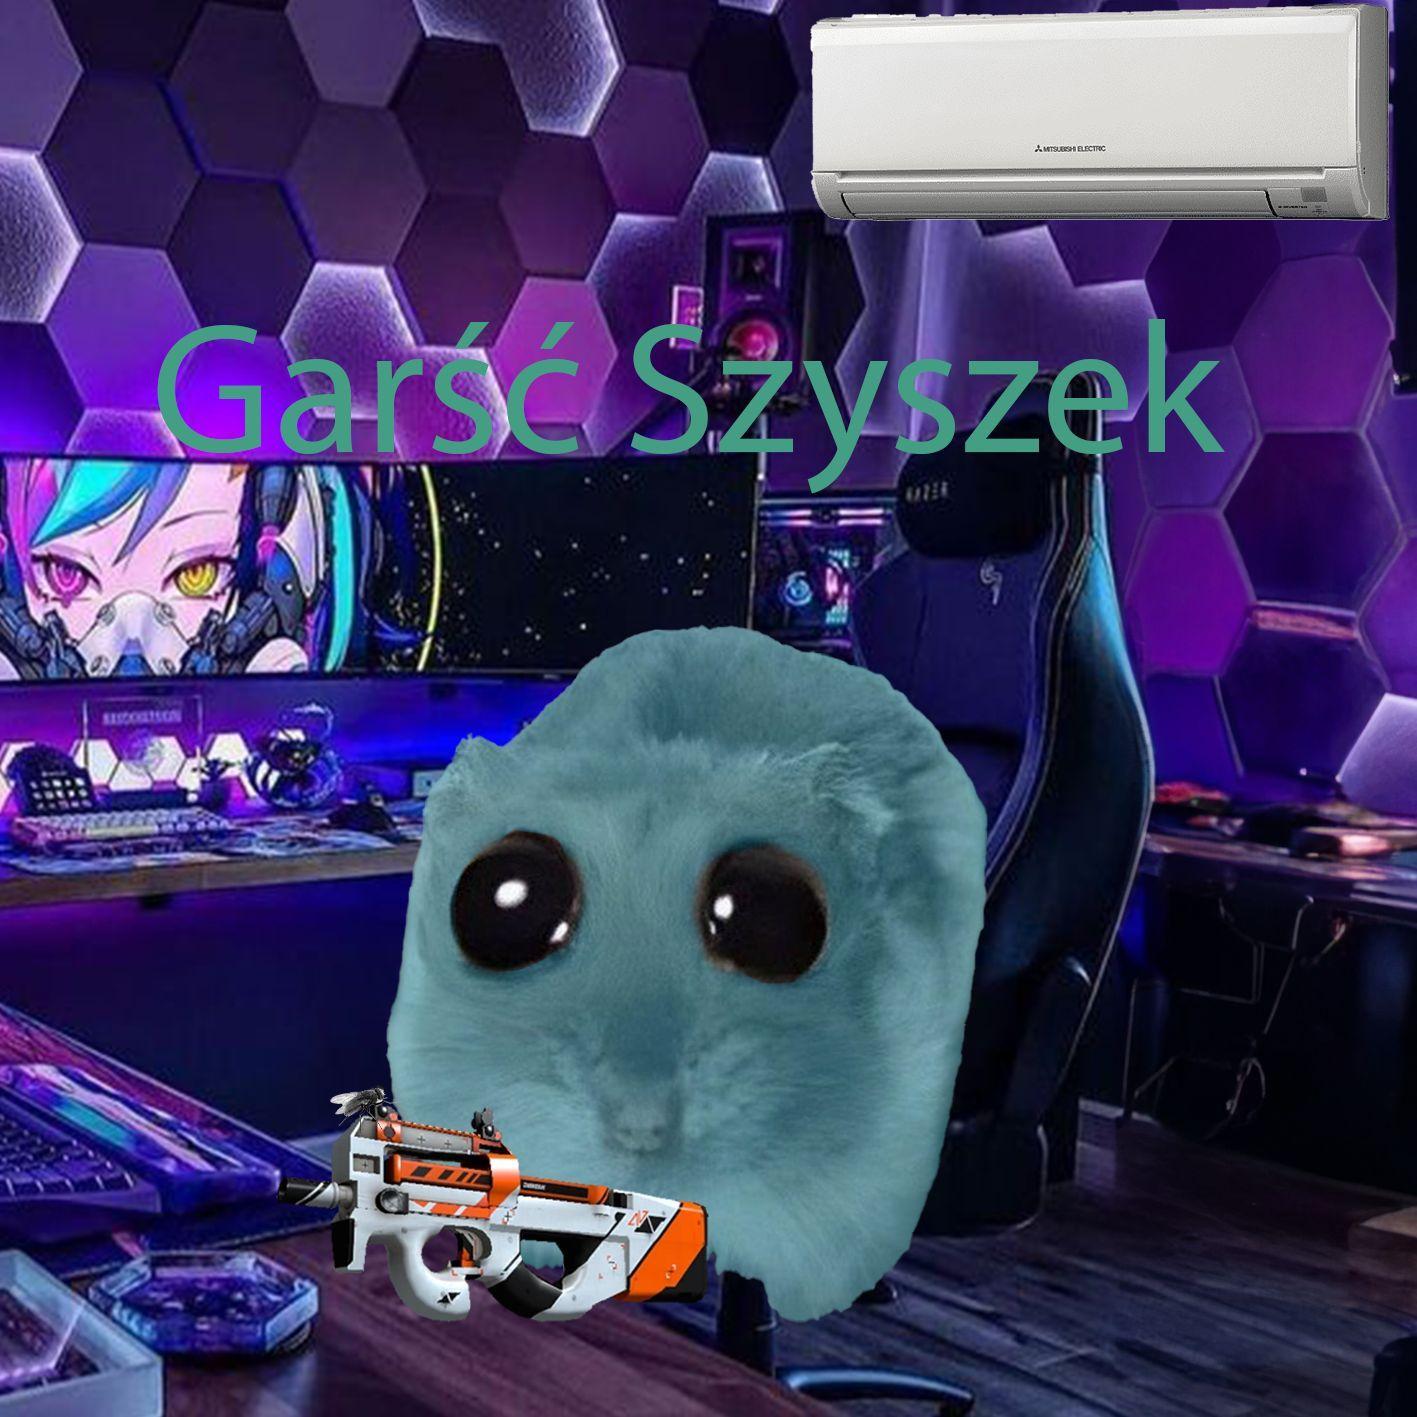 Player GarscSzyszek avatar